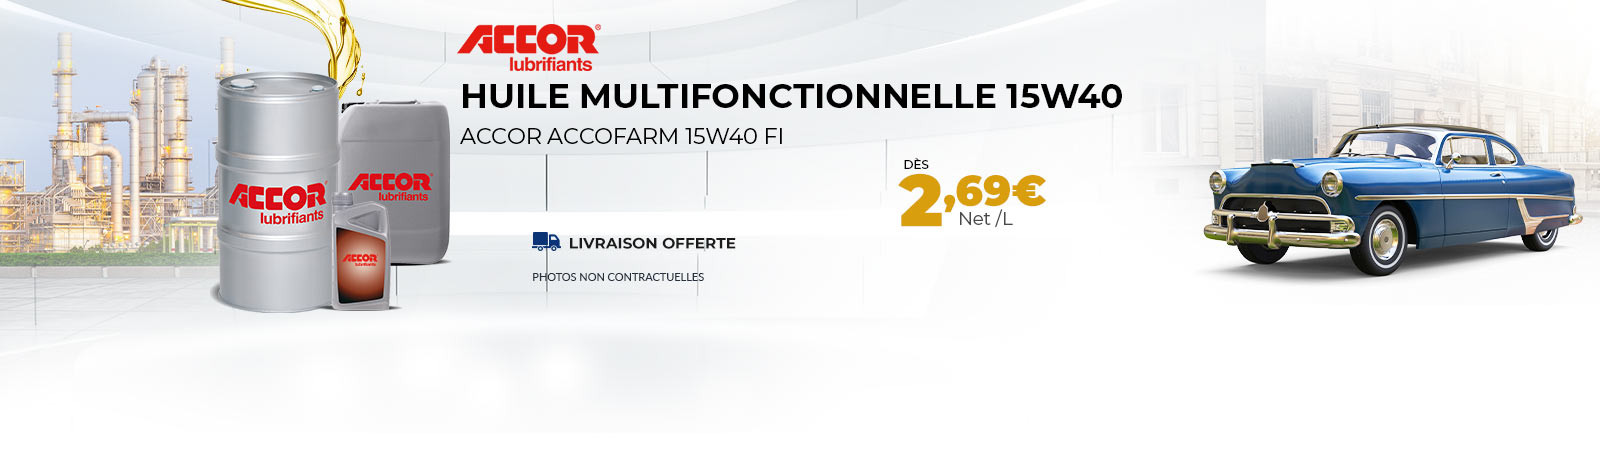 Huile multifonctionnelle 15w40 dès 2.69 €/l PORT OFFERT